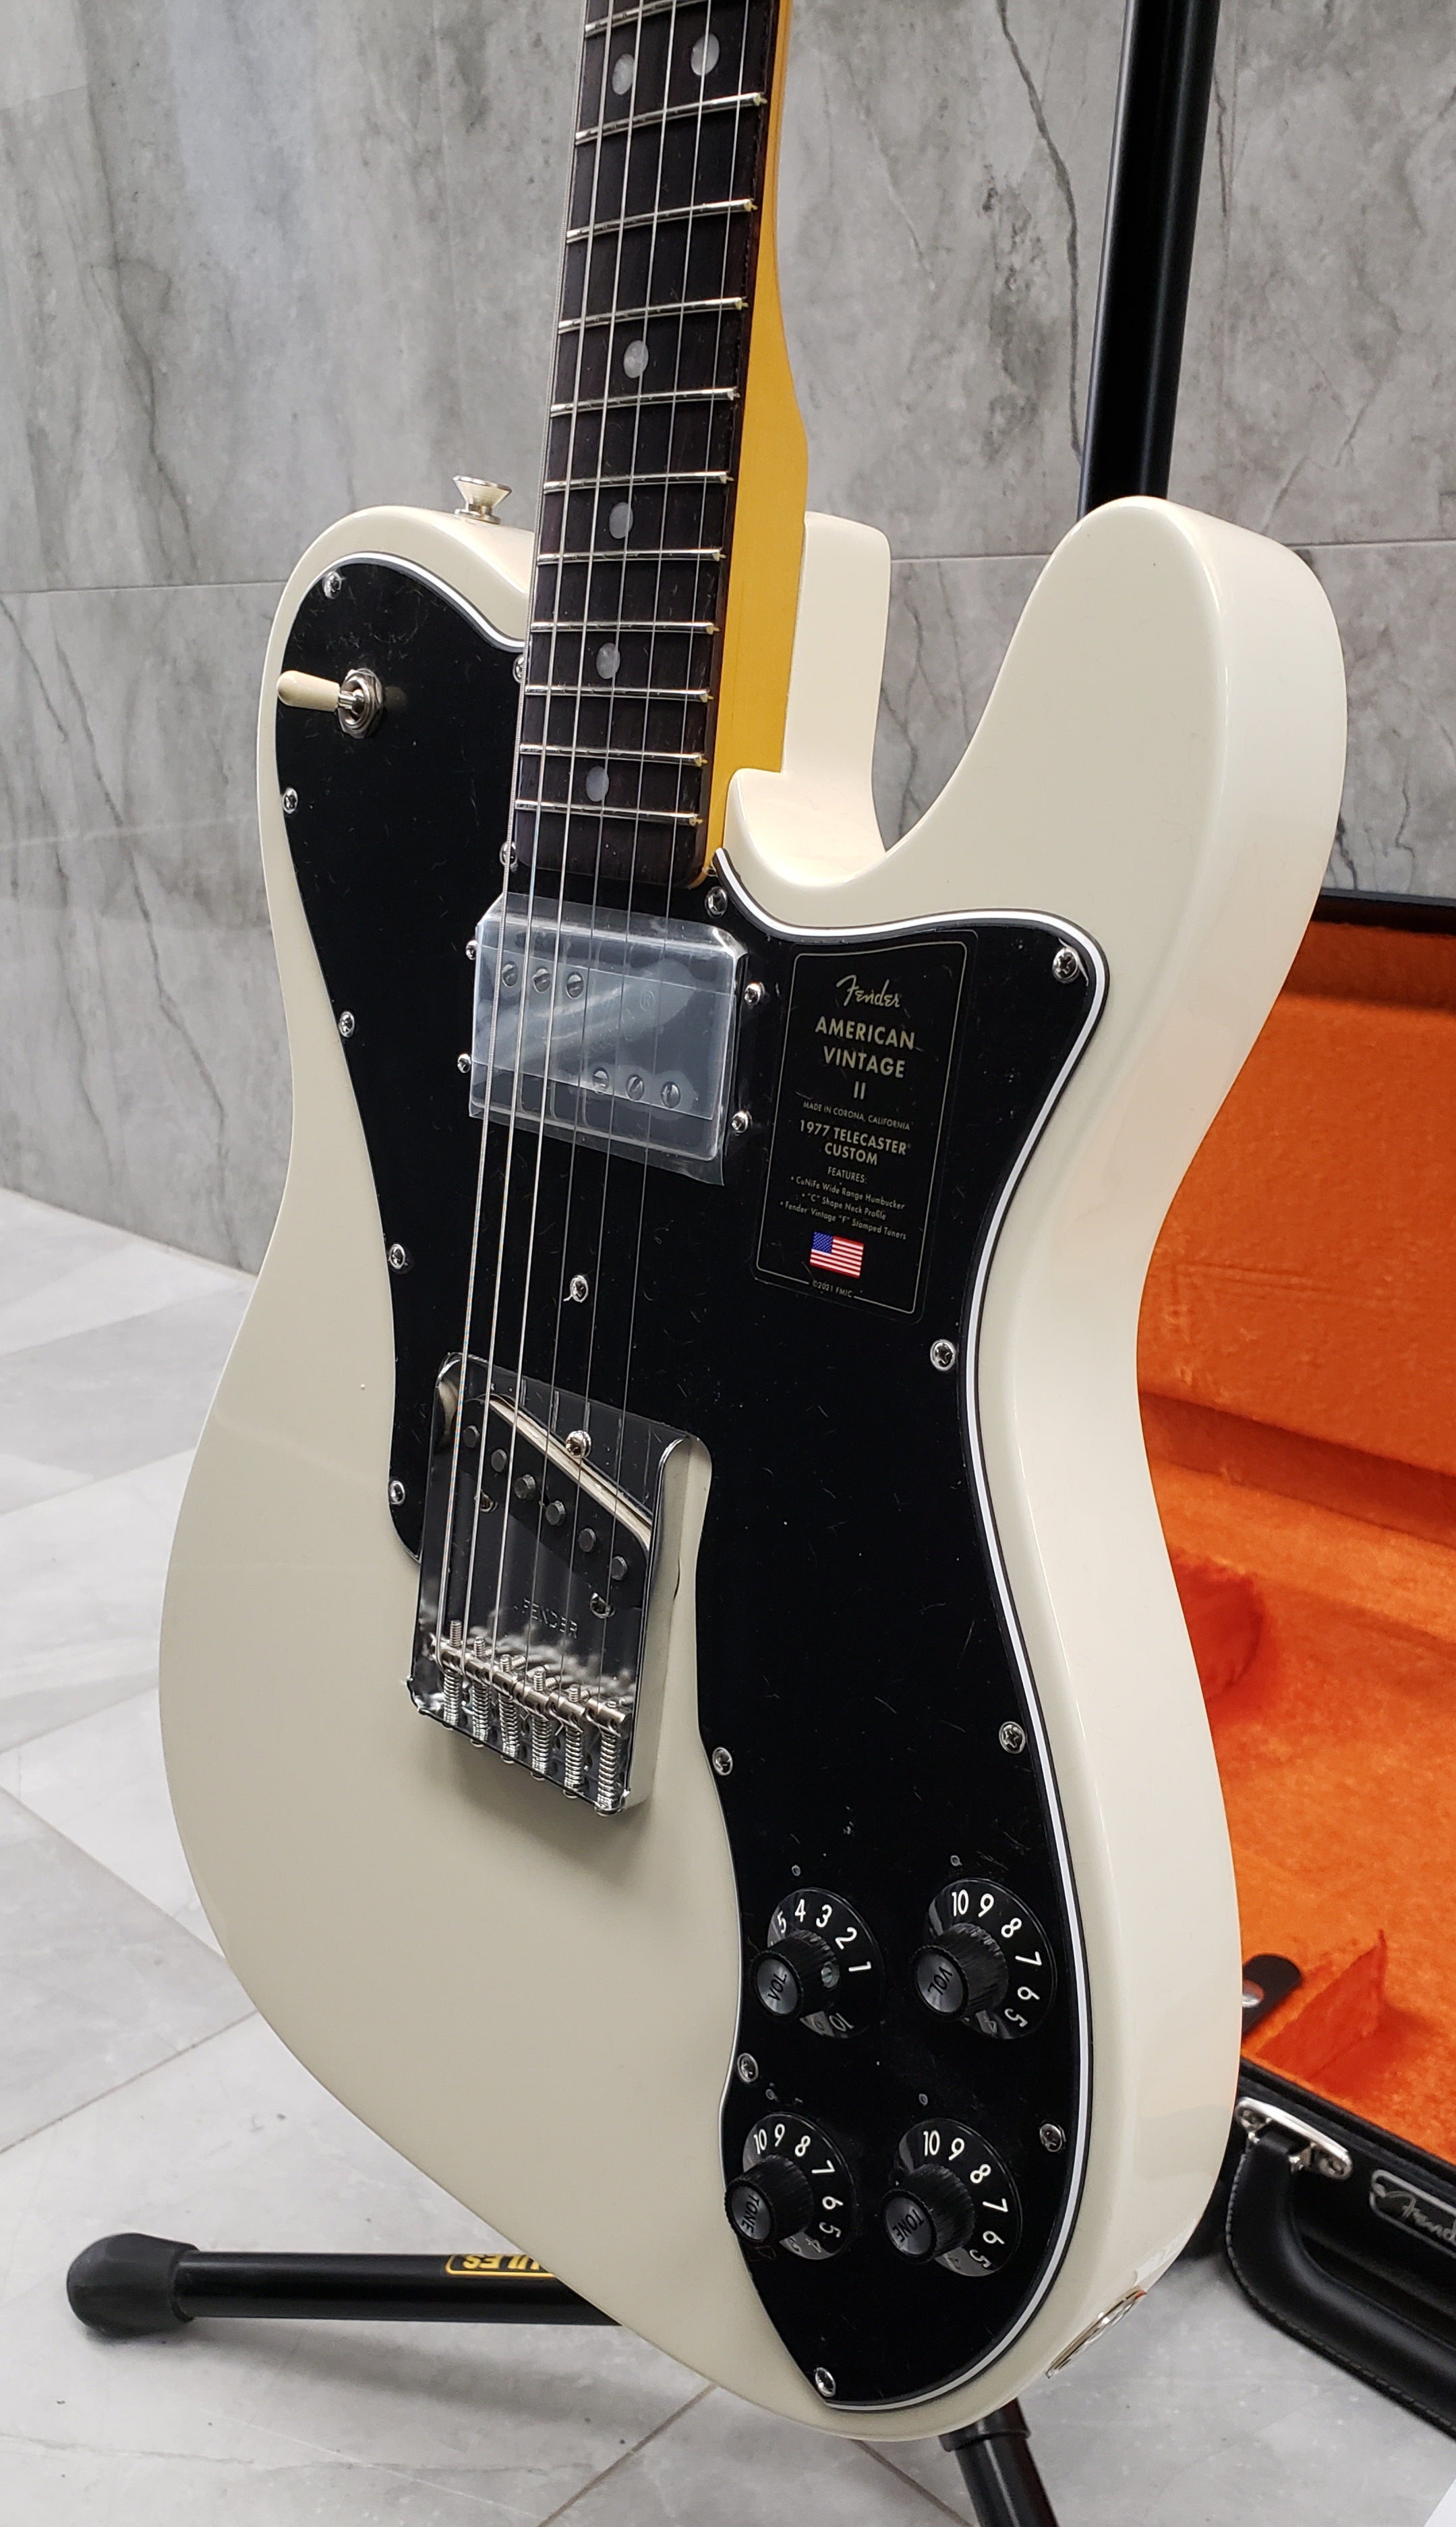 Fender American Vintage II 1977 Telecaster Custom Rosewood Fingerboard,  Olympic White 0110440805 SERIAL NUMBER VS220057 - 7.8 LBS